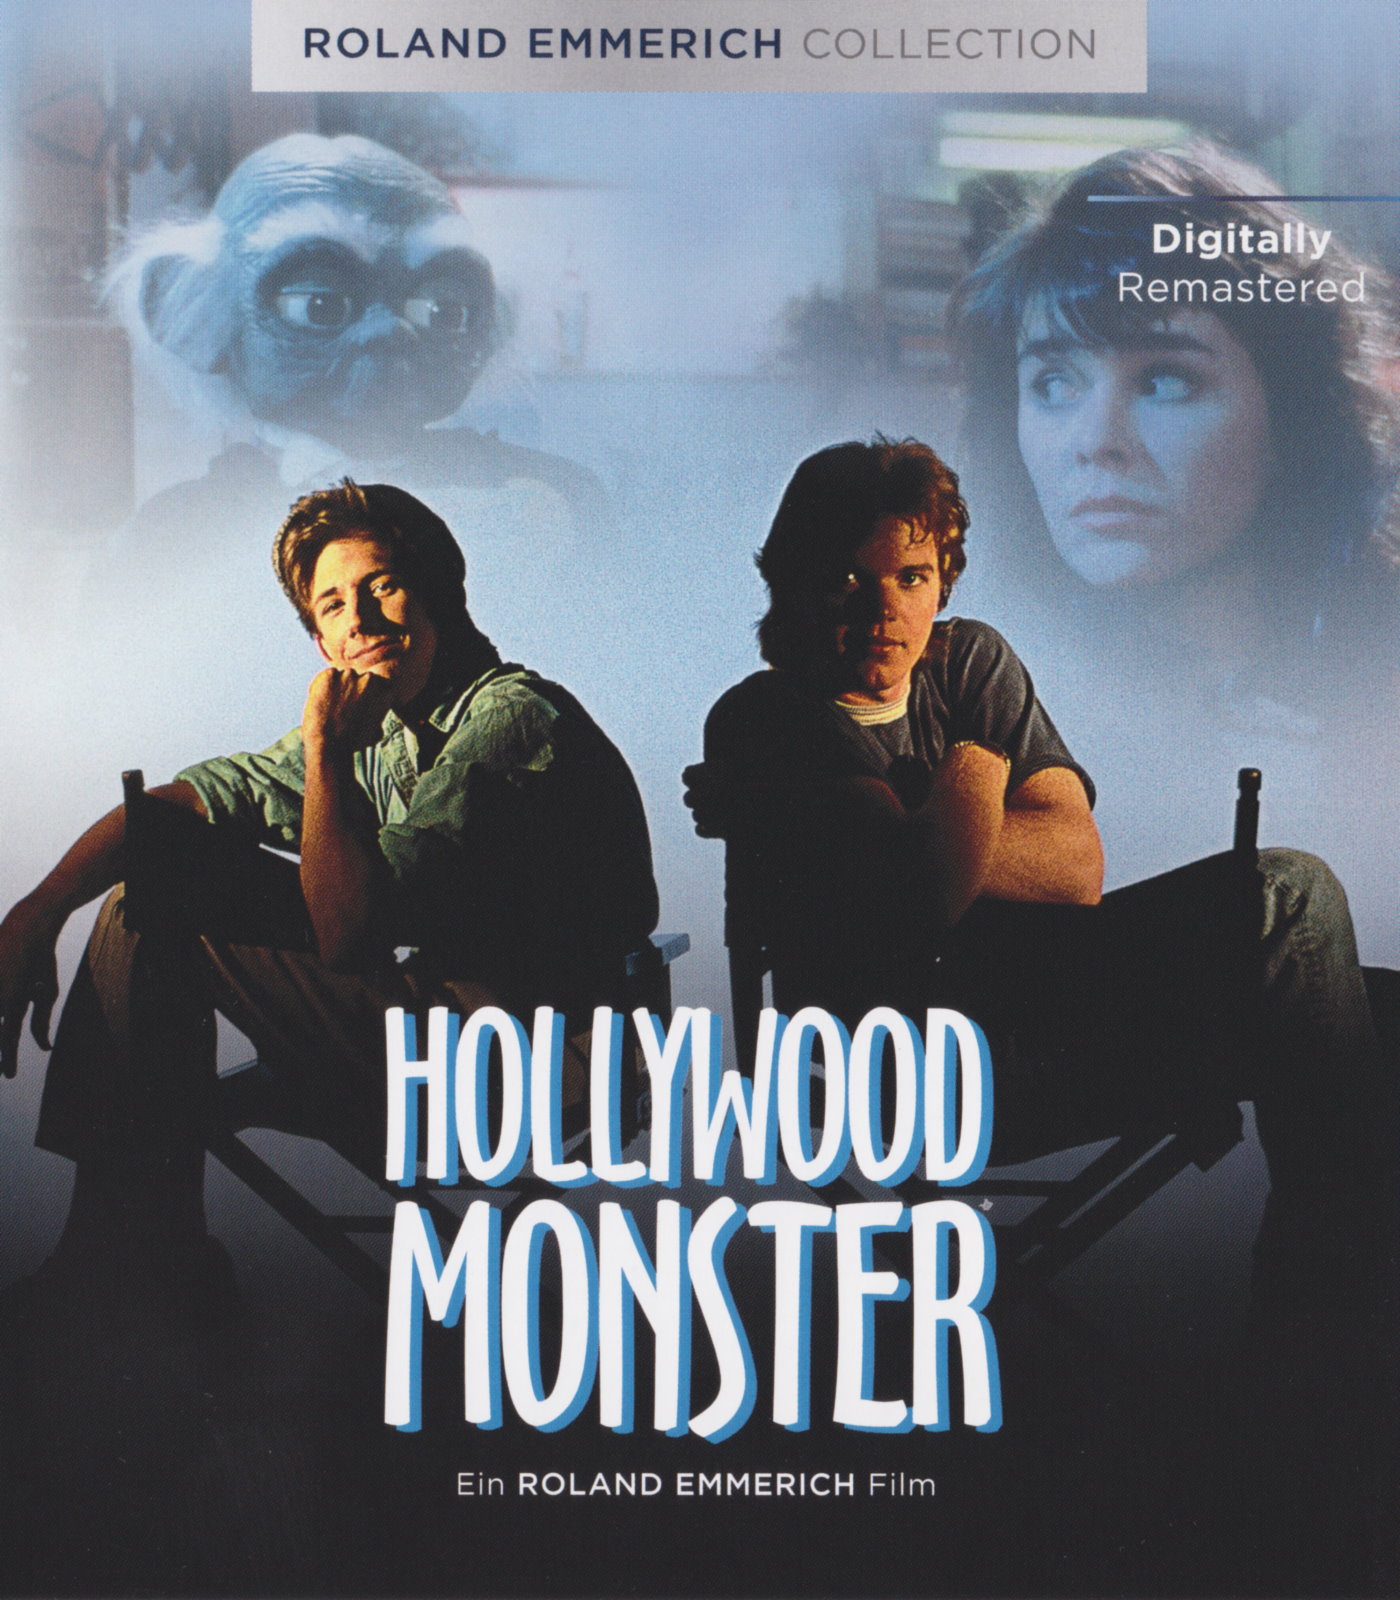 Cover - Hollywood Monster.jpg